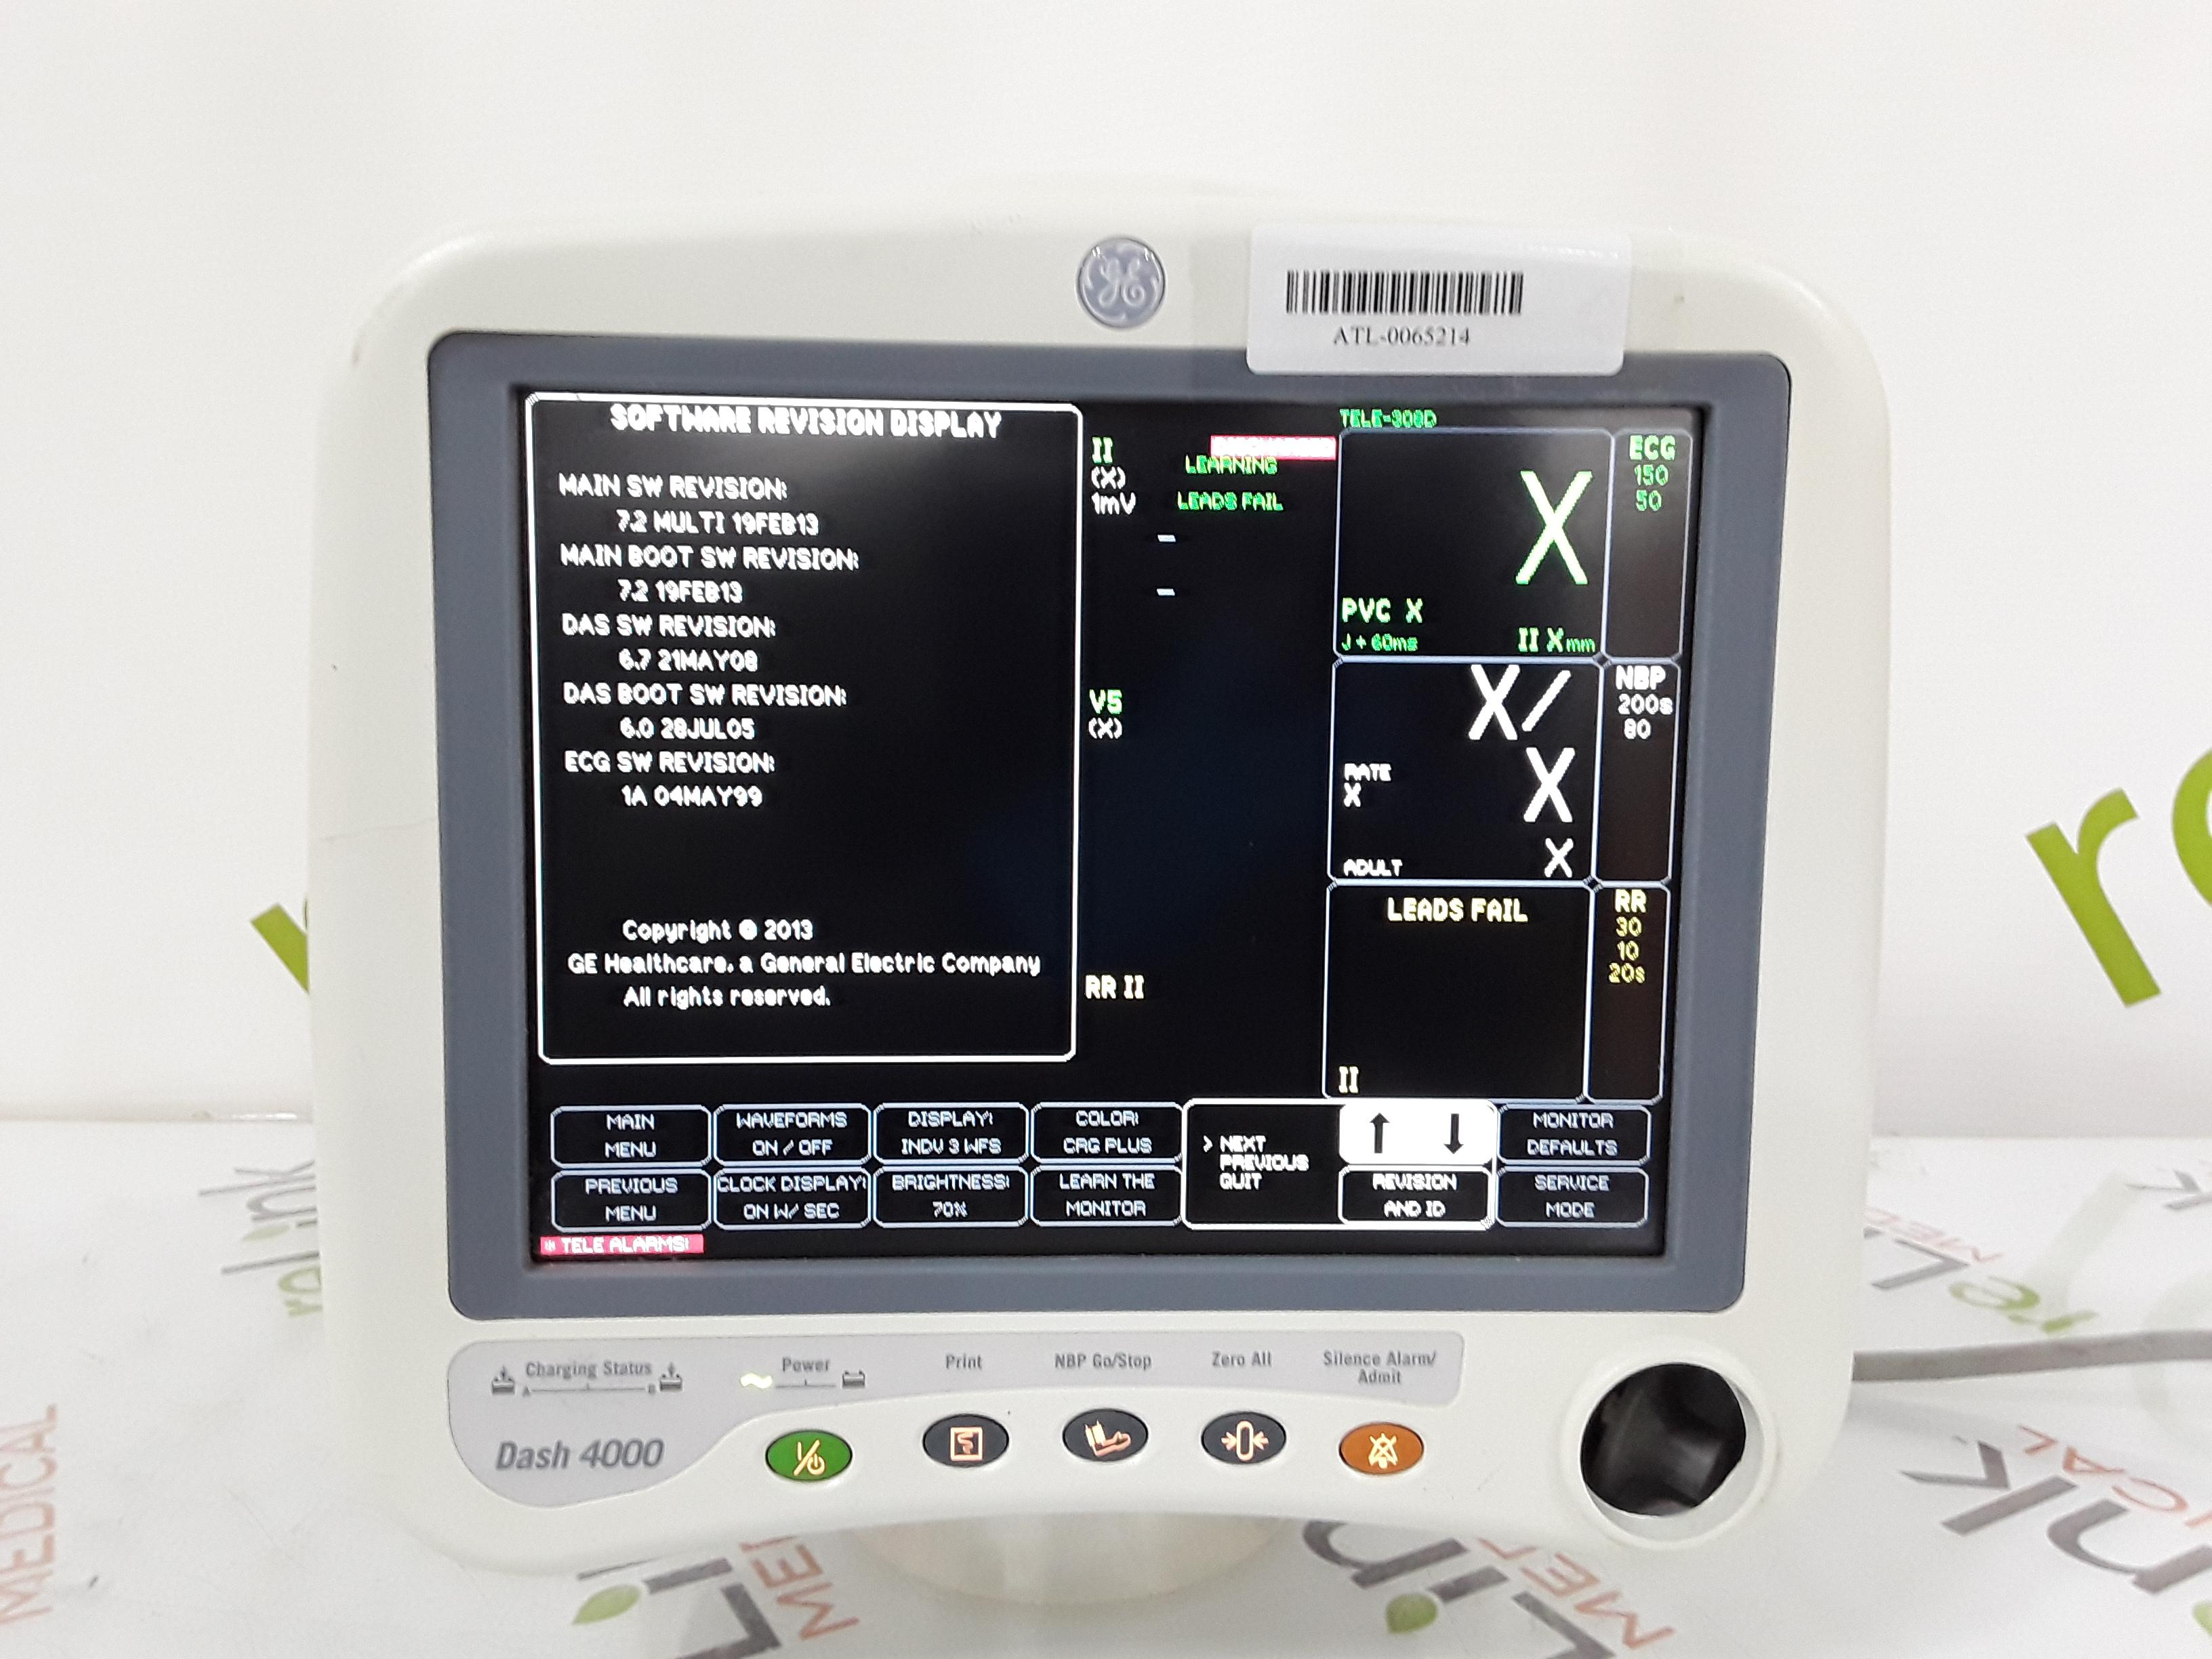 GE Healthcare Dash 4000 - GE/Nellcor SpO2 Patient Monitor - 372834